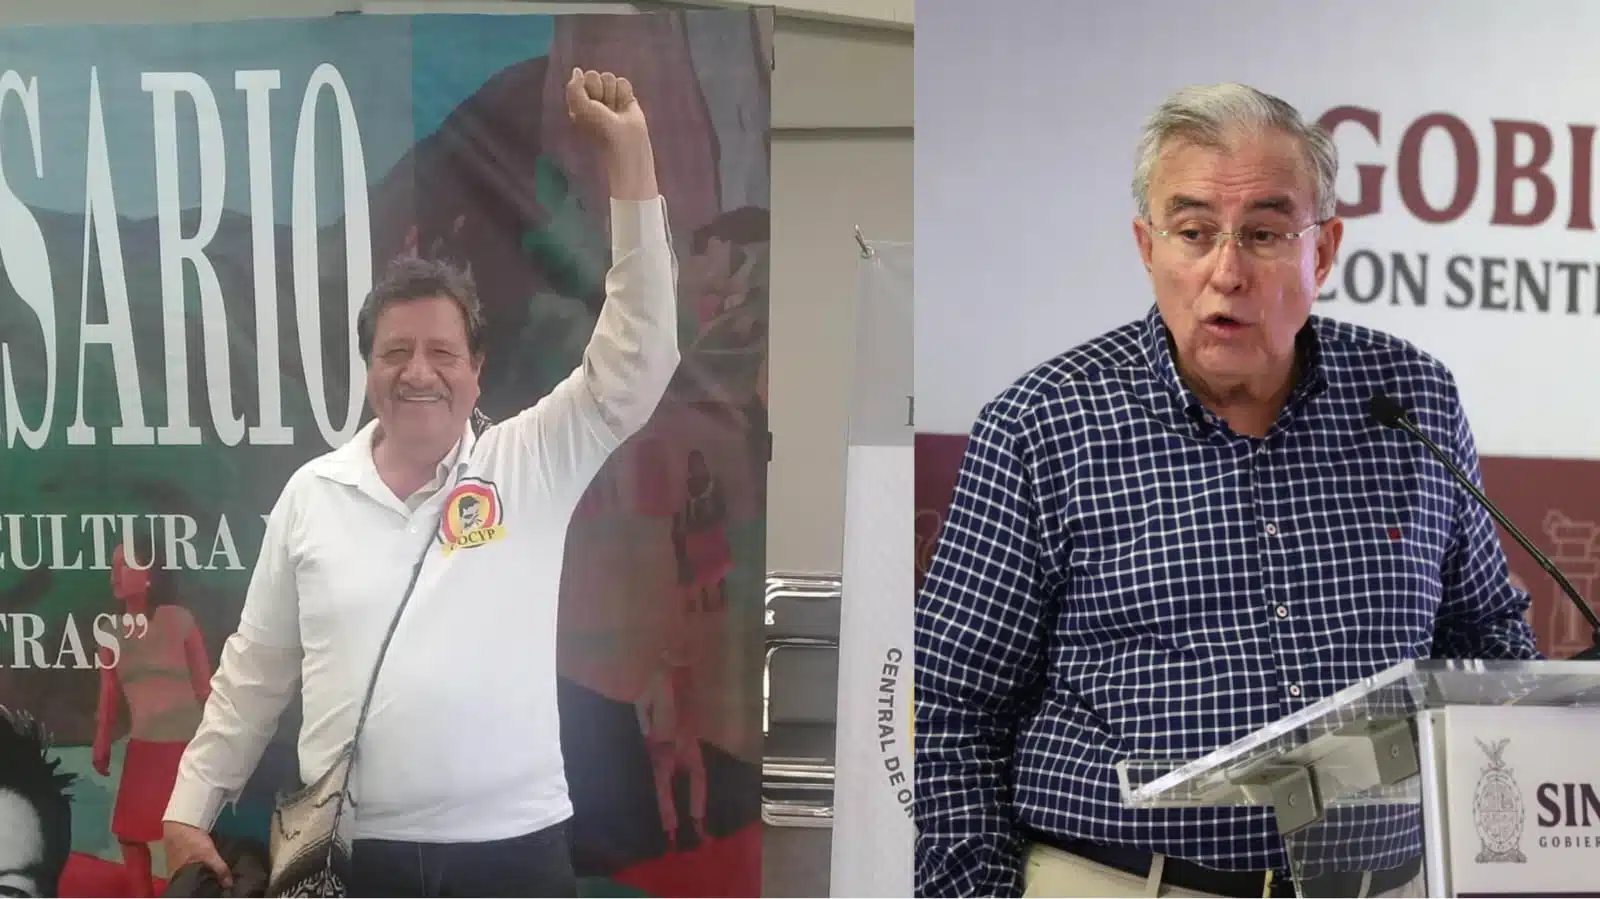 De lado izquierdo profesor Román Rubio López del lado derecho Gobernador de Sinaloa